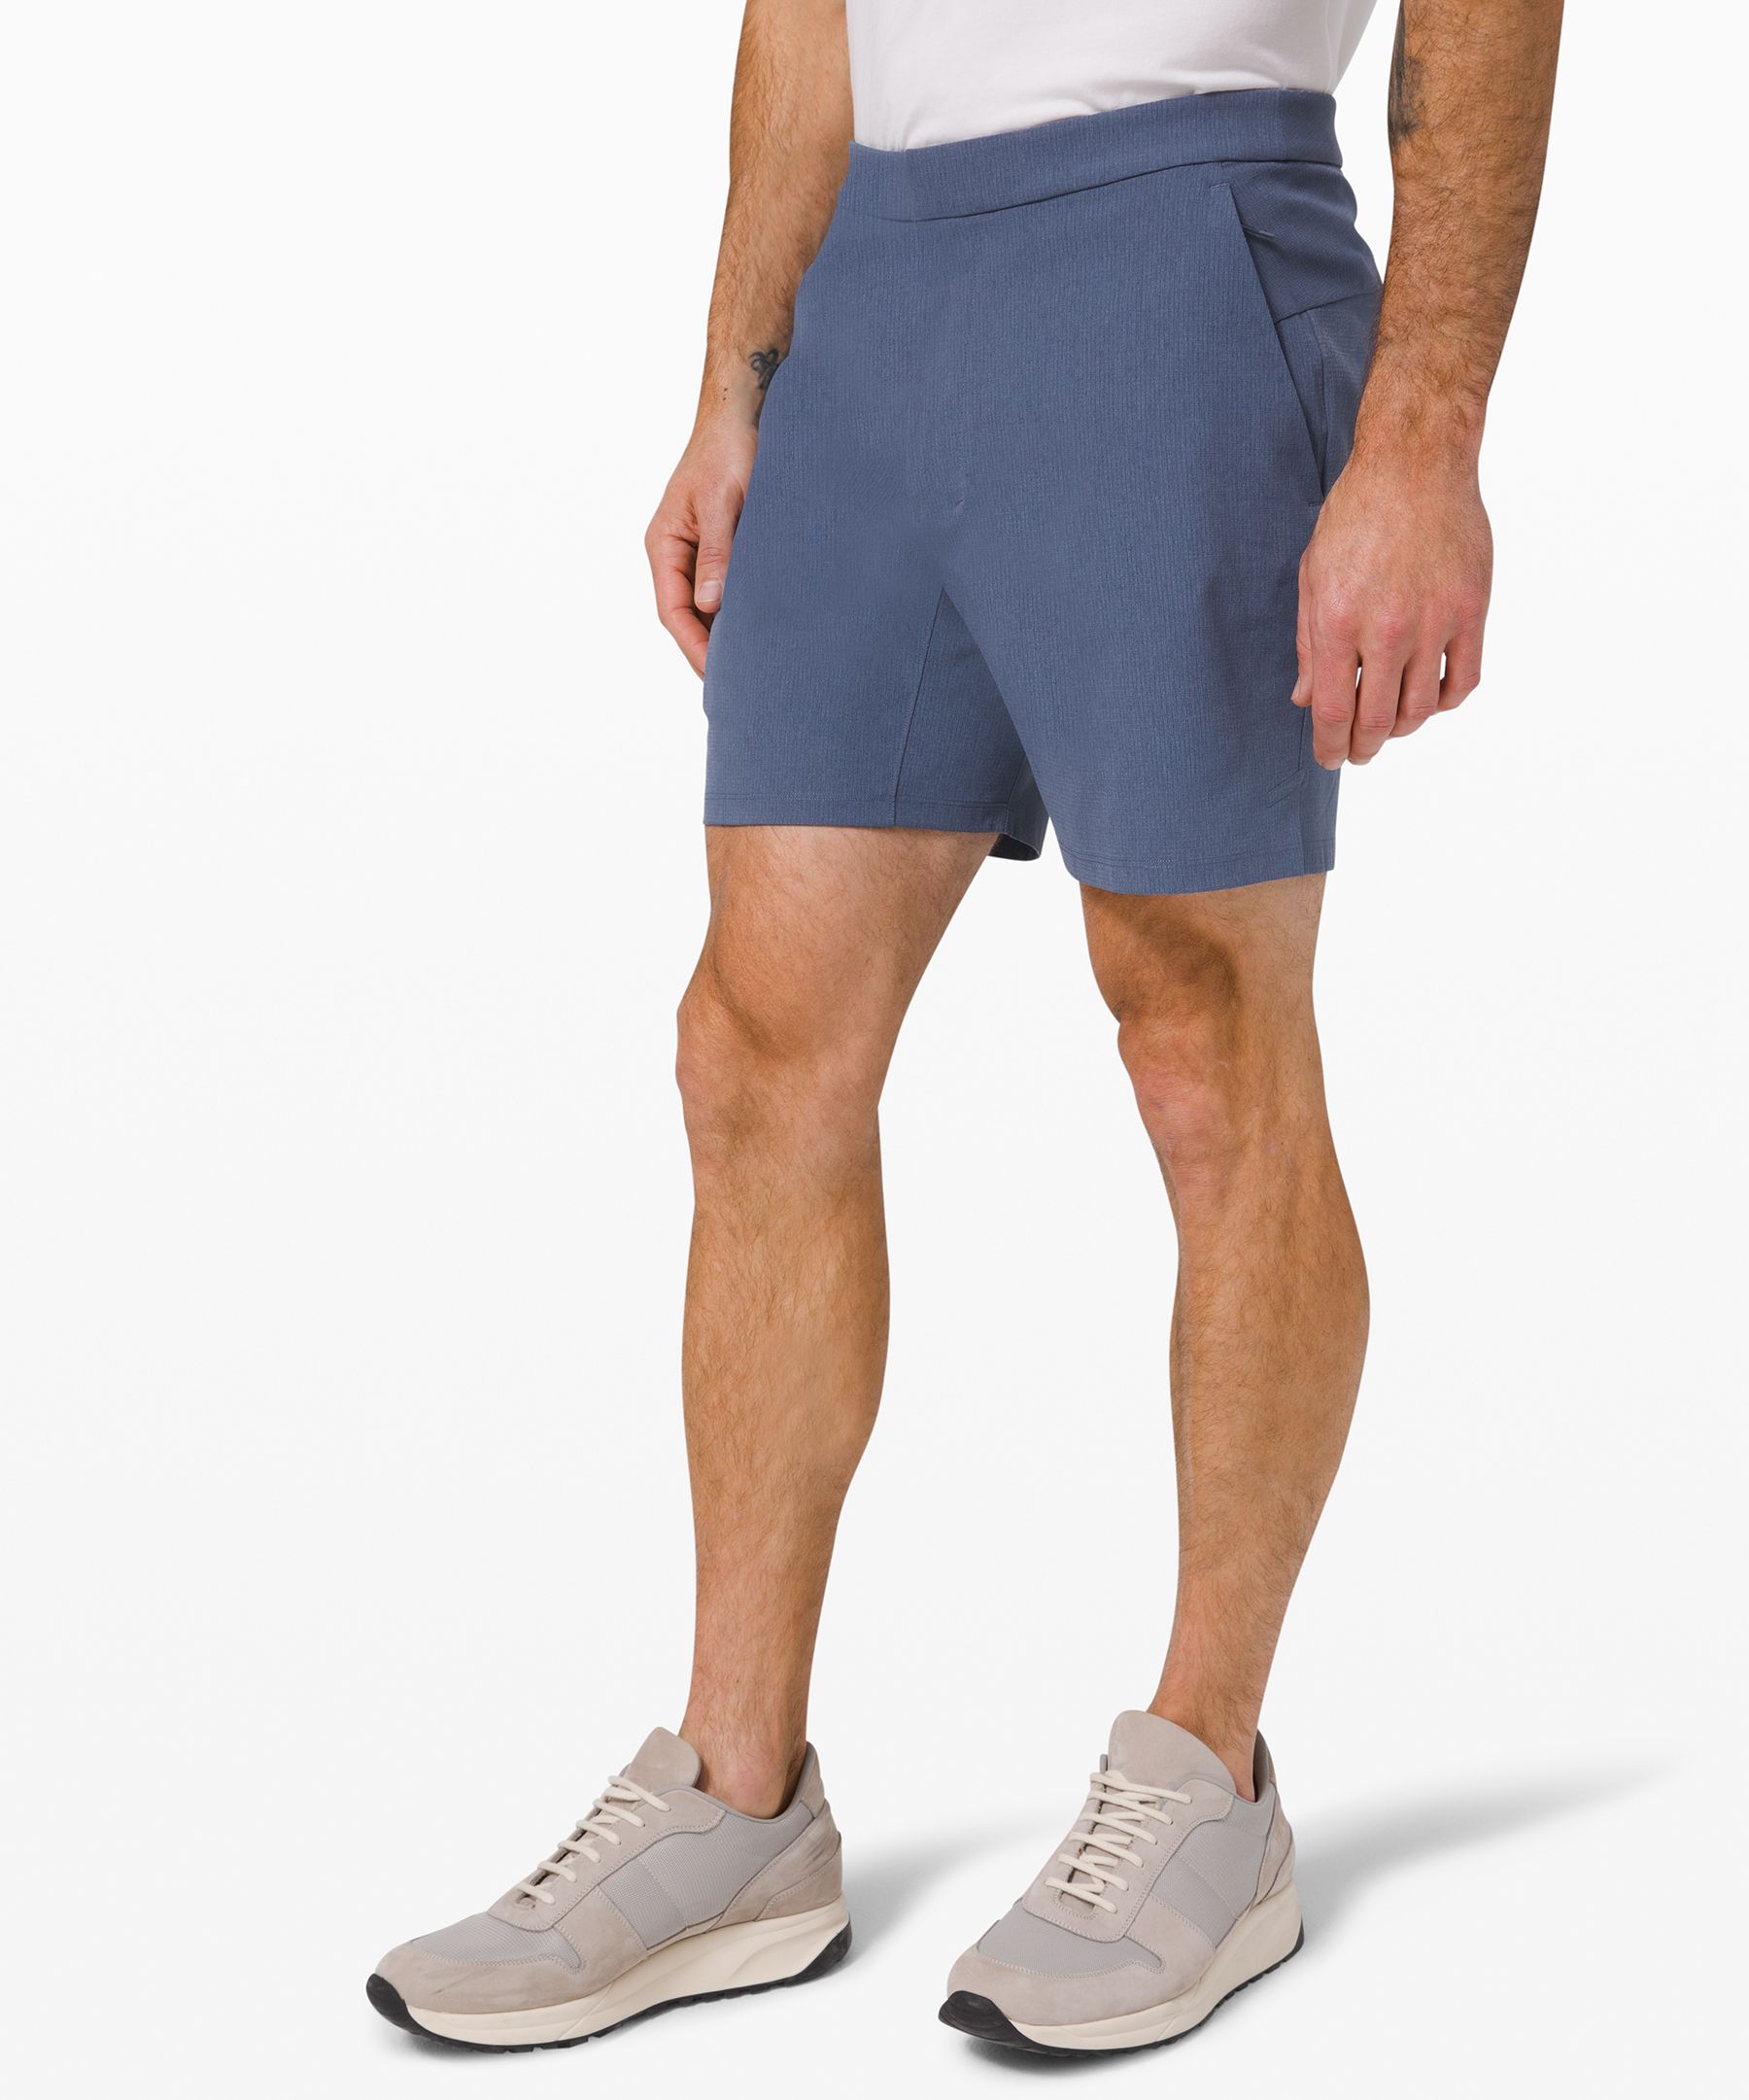 lululemon city shorts